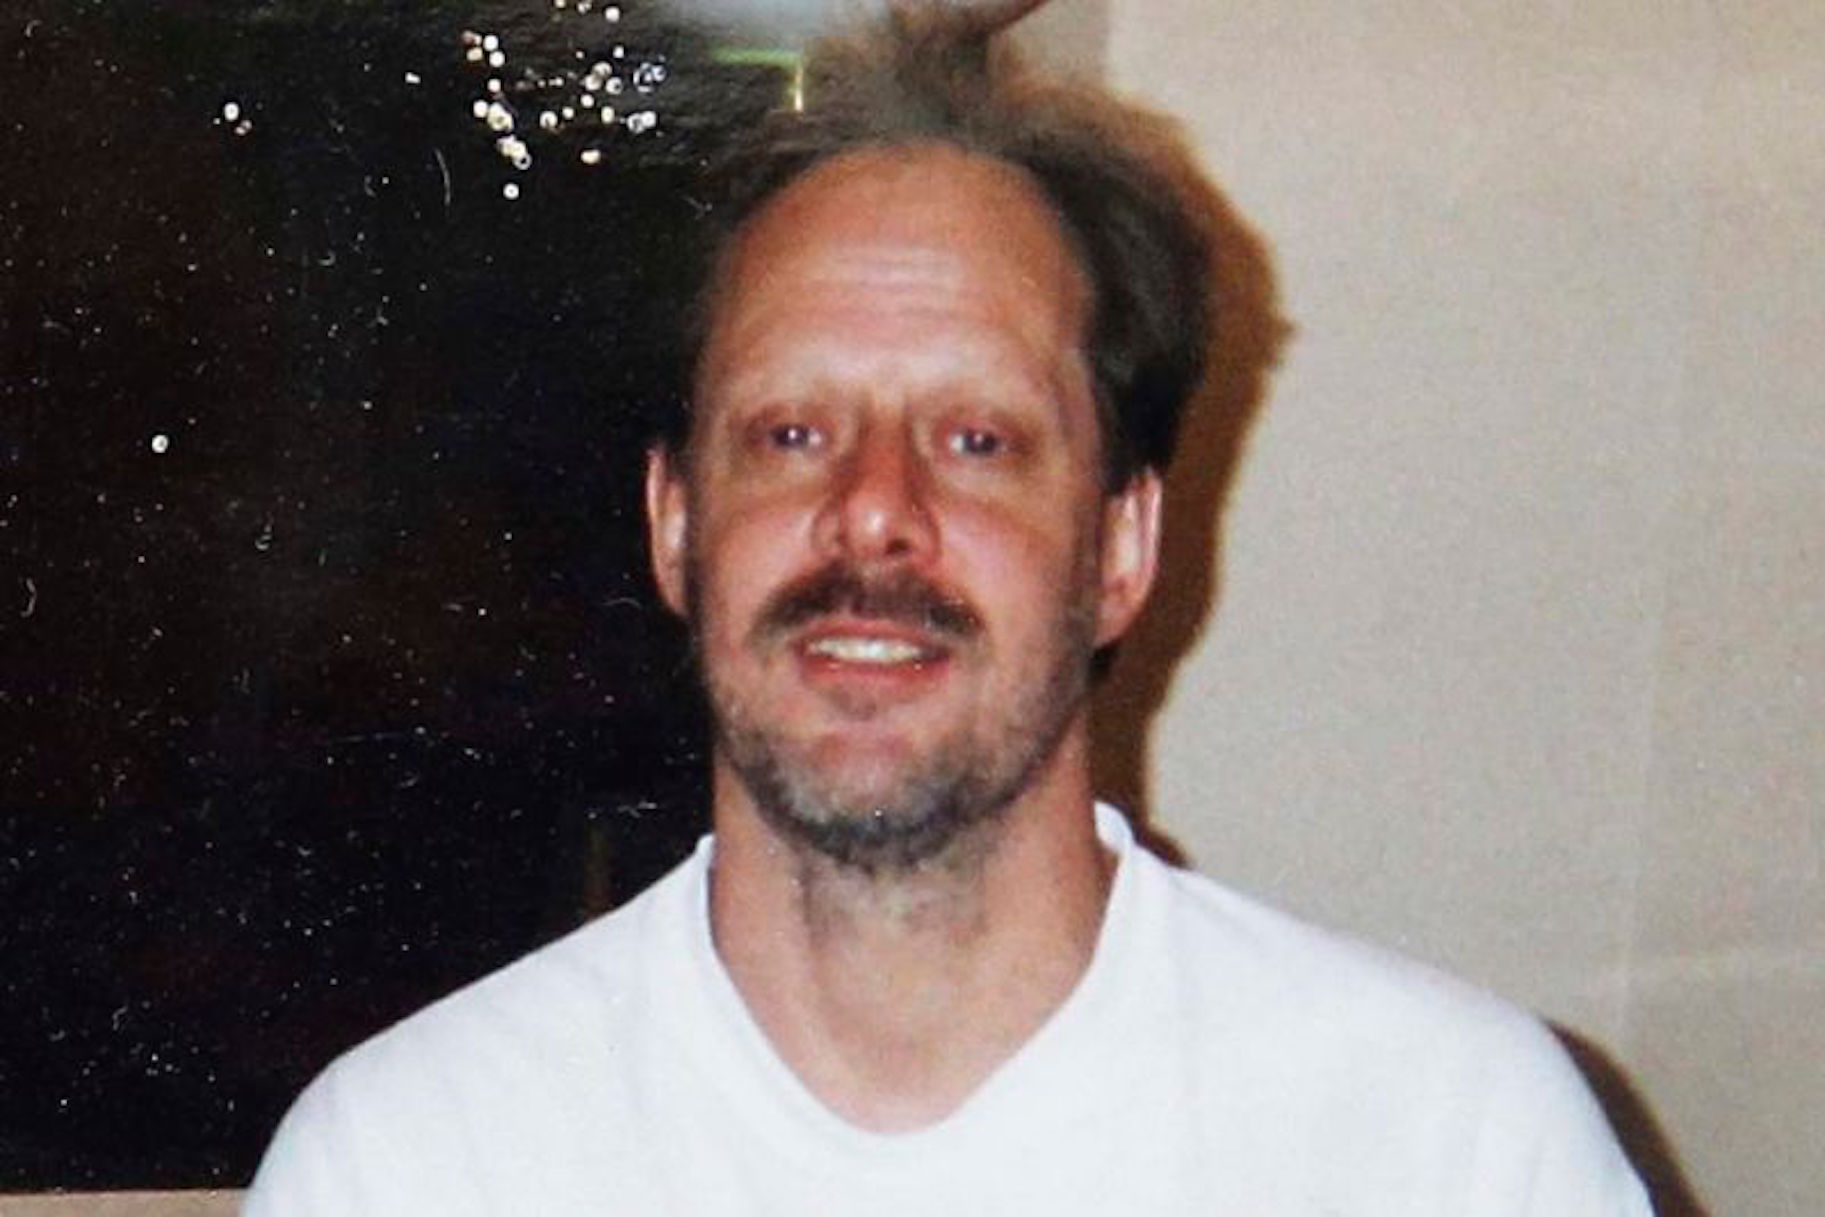 El material de la càmera del cos publicat recentment mostra que la policia va trobar el cos de Stephen Paddock durant el rodatge de Las Vegas